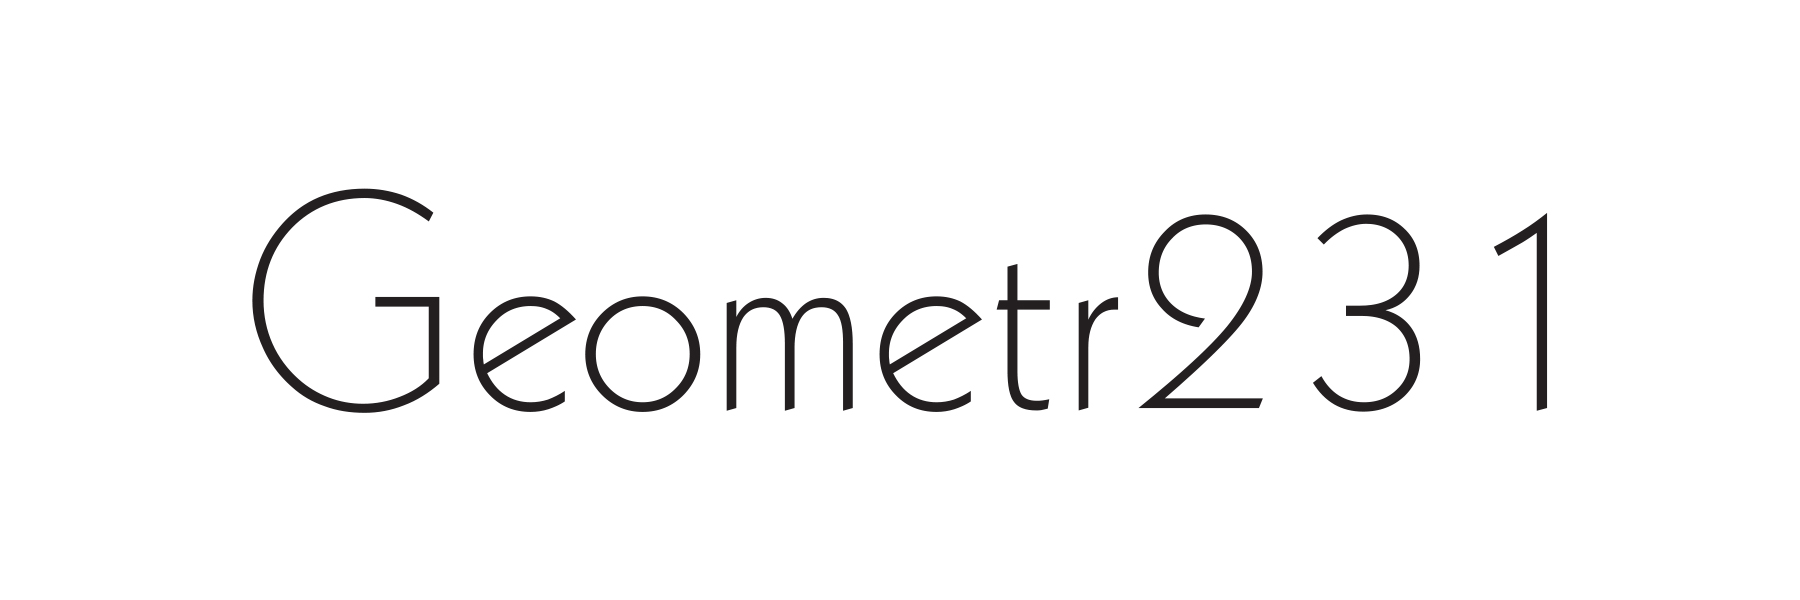 Geometr231